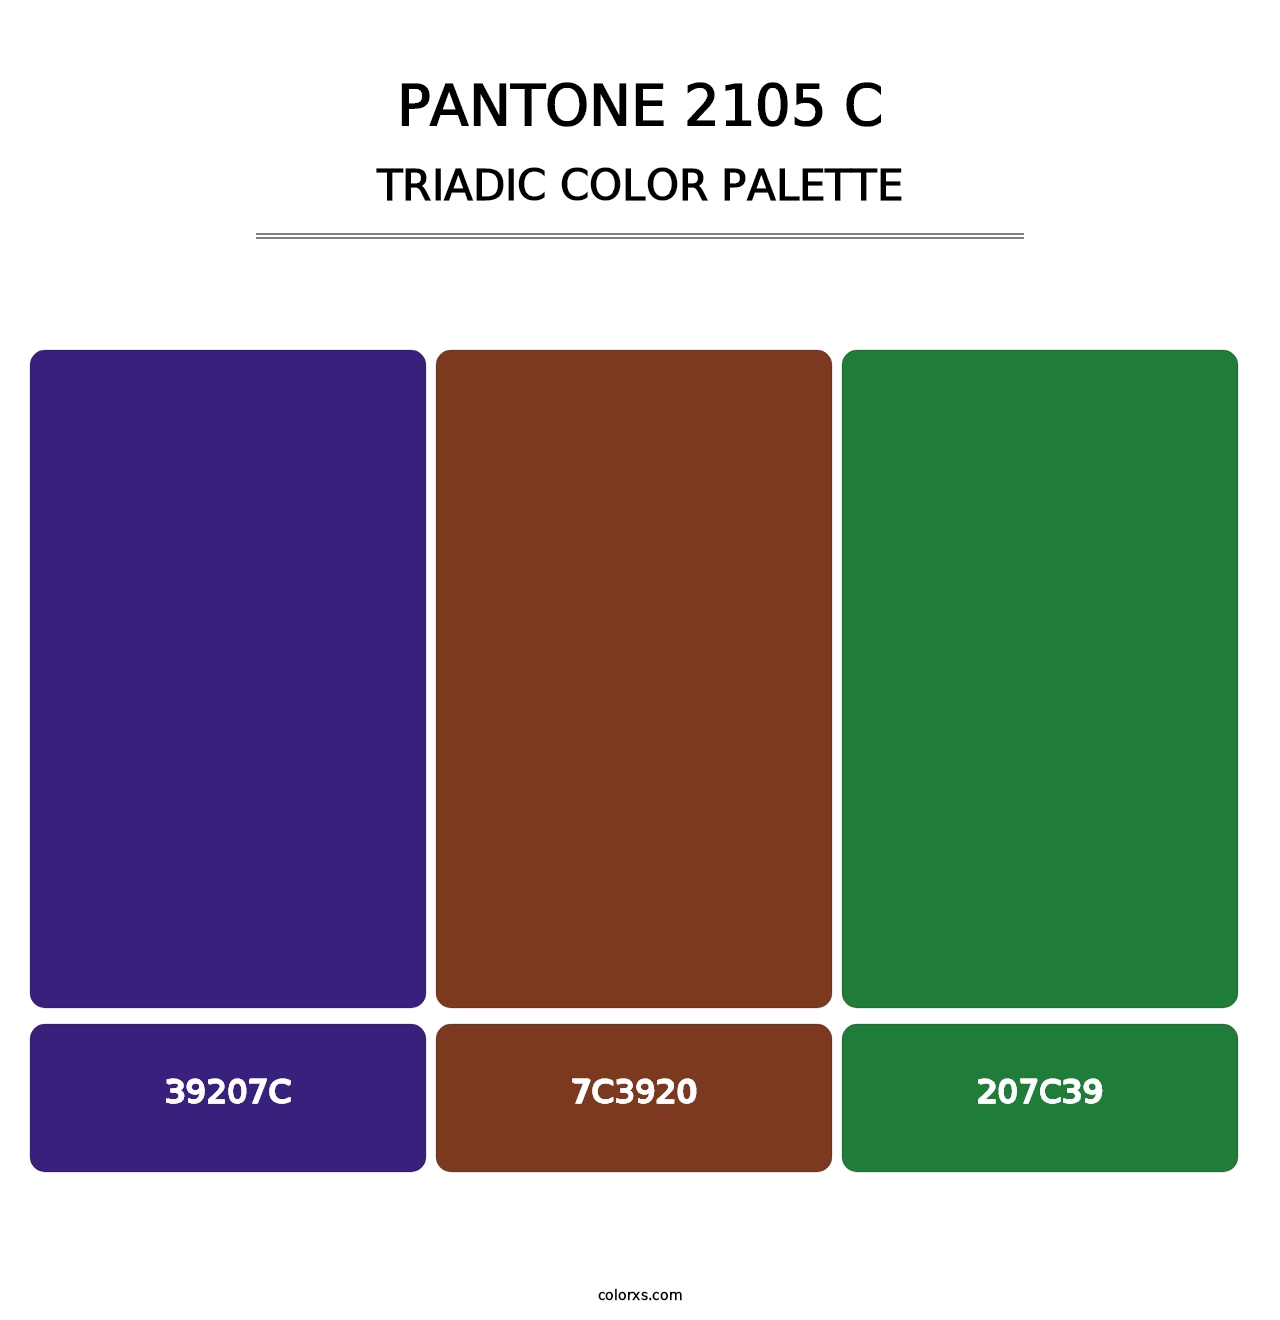 PANTONE 2105 C - Triadic Color Palette